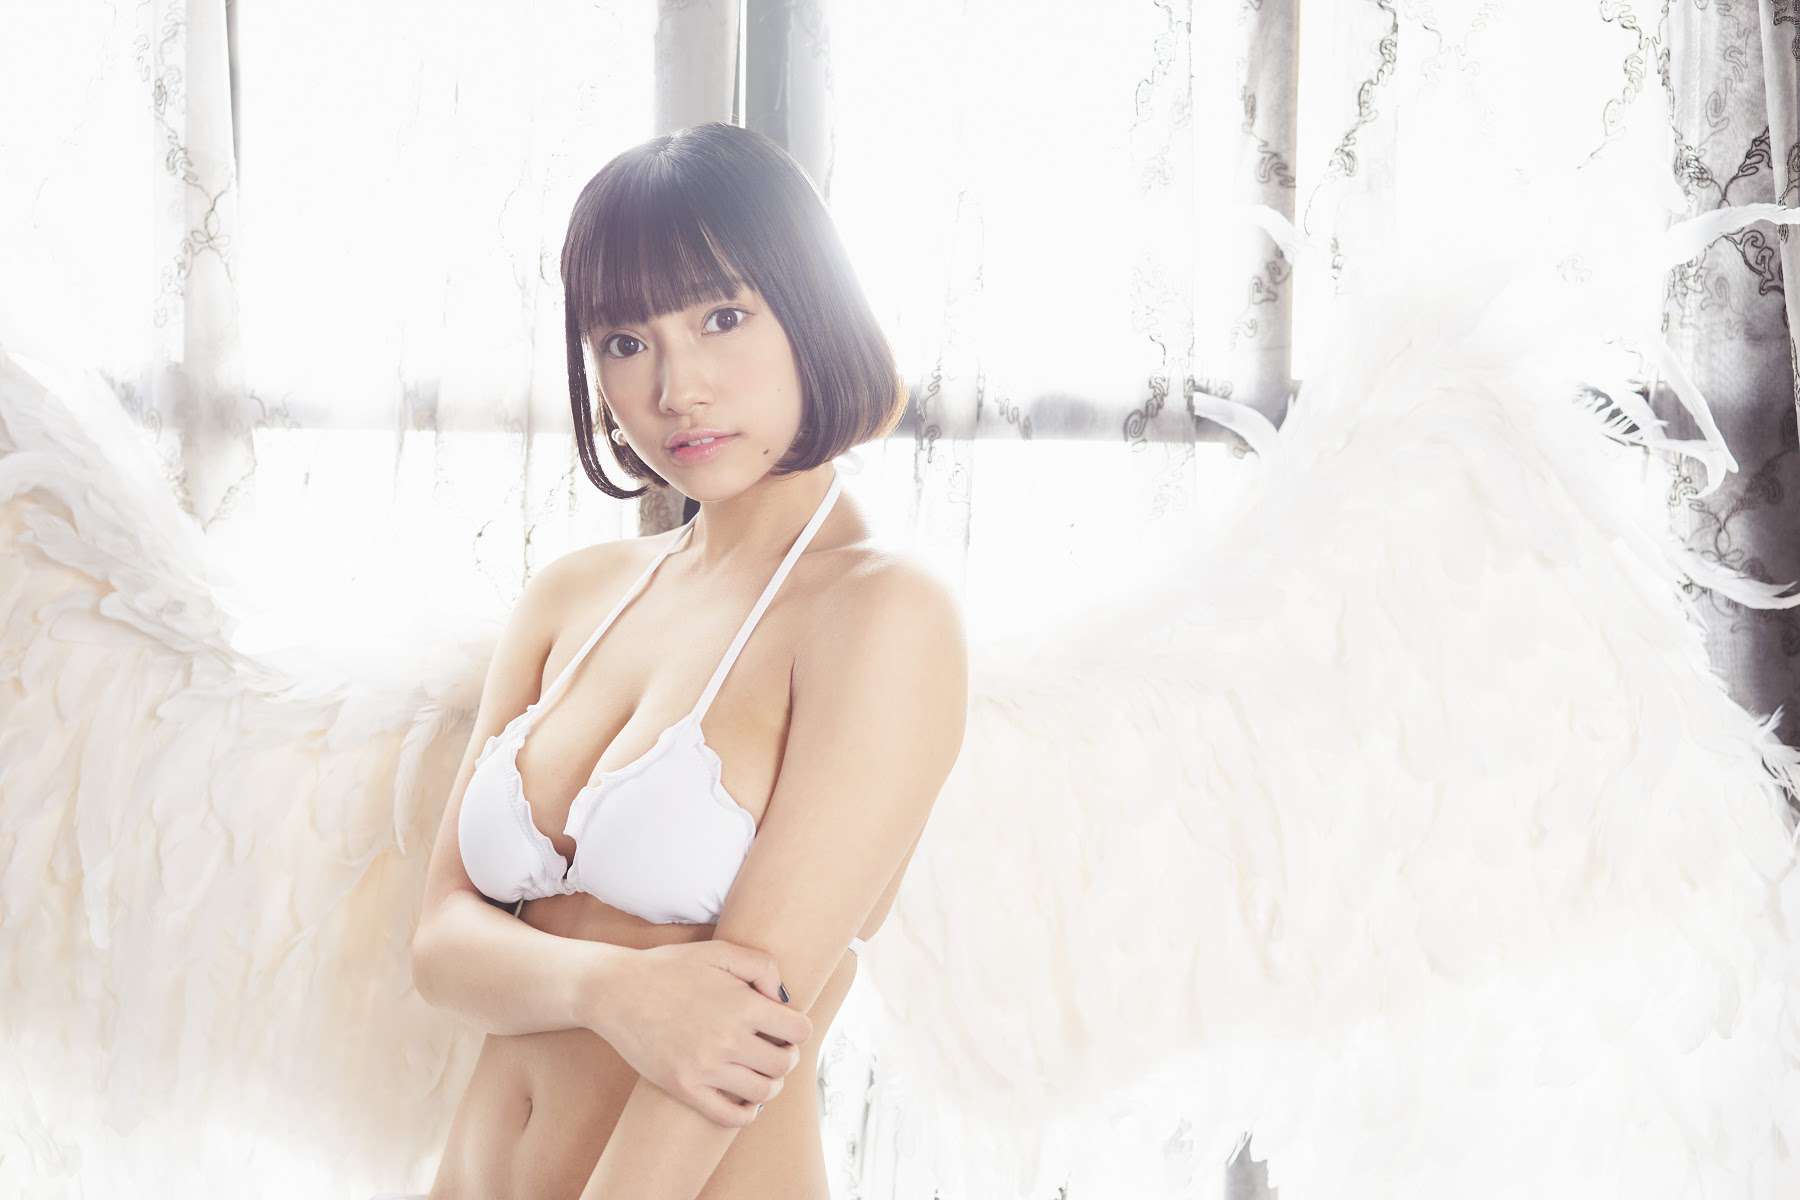 日本少女偶像《天使もも》写真「死库水」-第11张图片